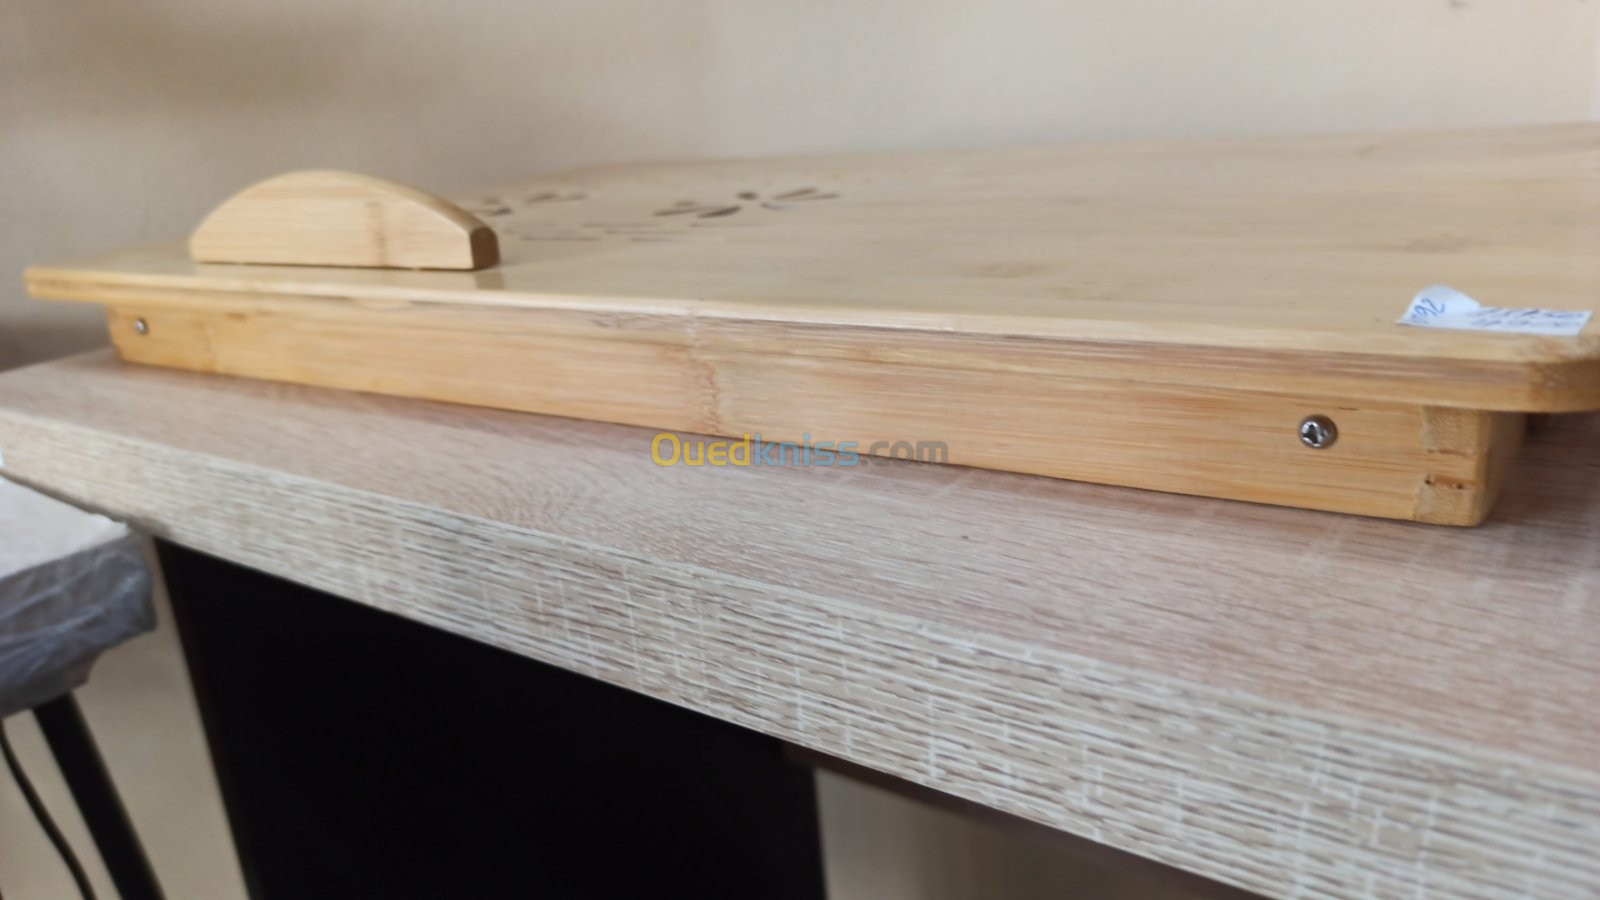 Table Pc PORTABLE LAPTOP pliante En Bois-Bamboo- BM70 Refroidissement USB